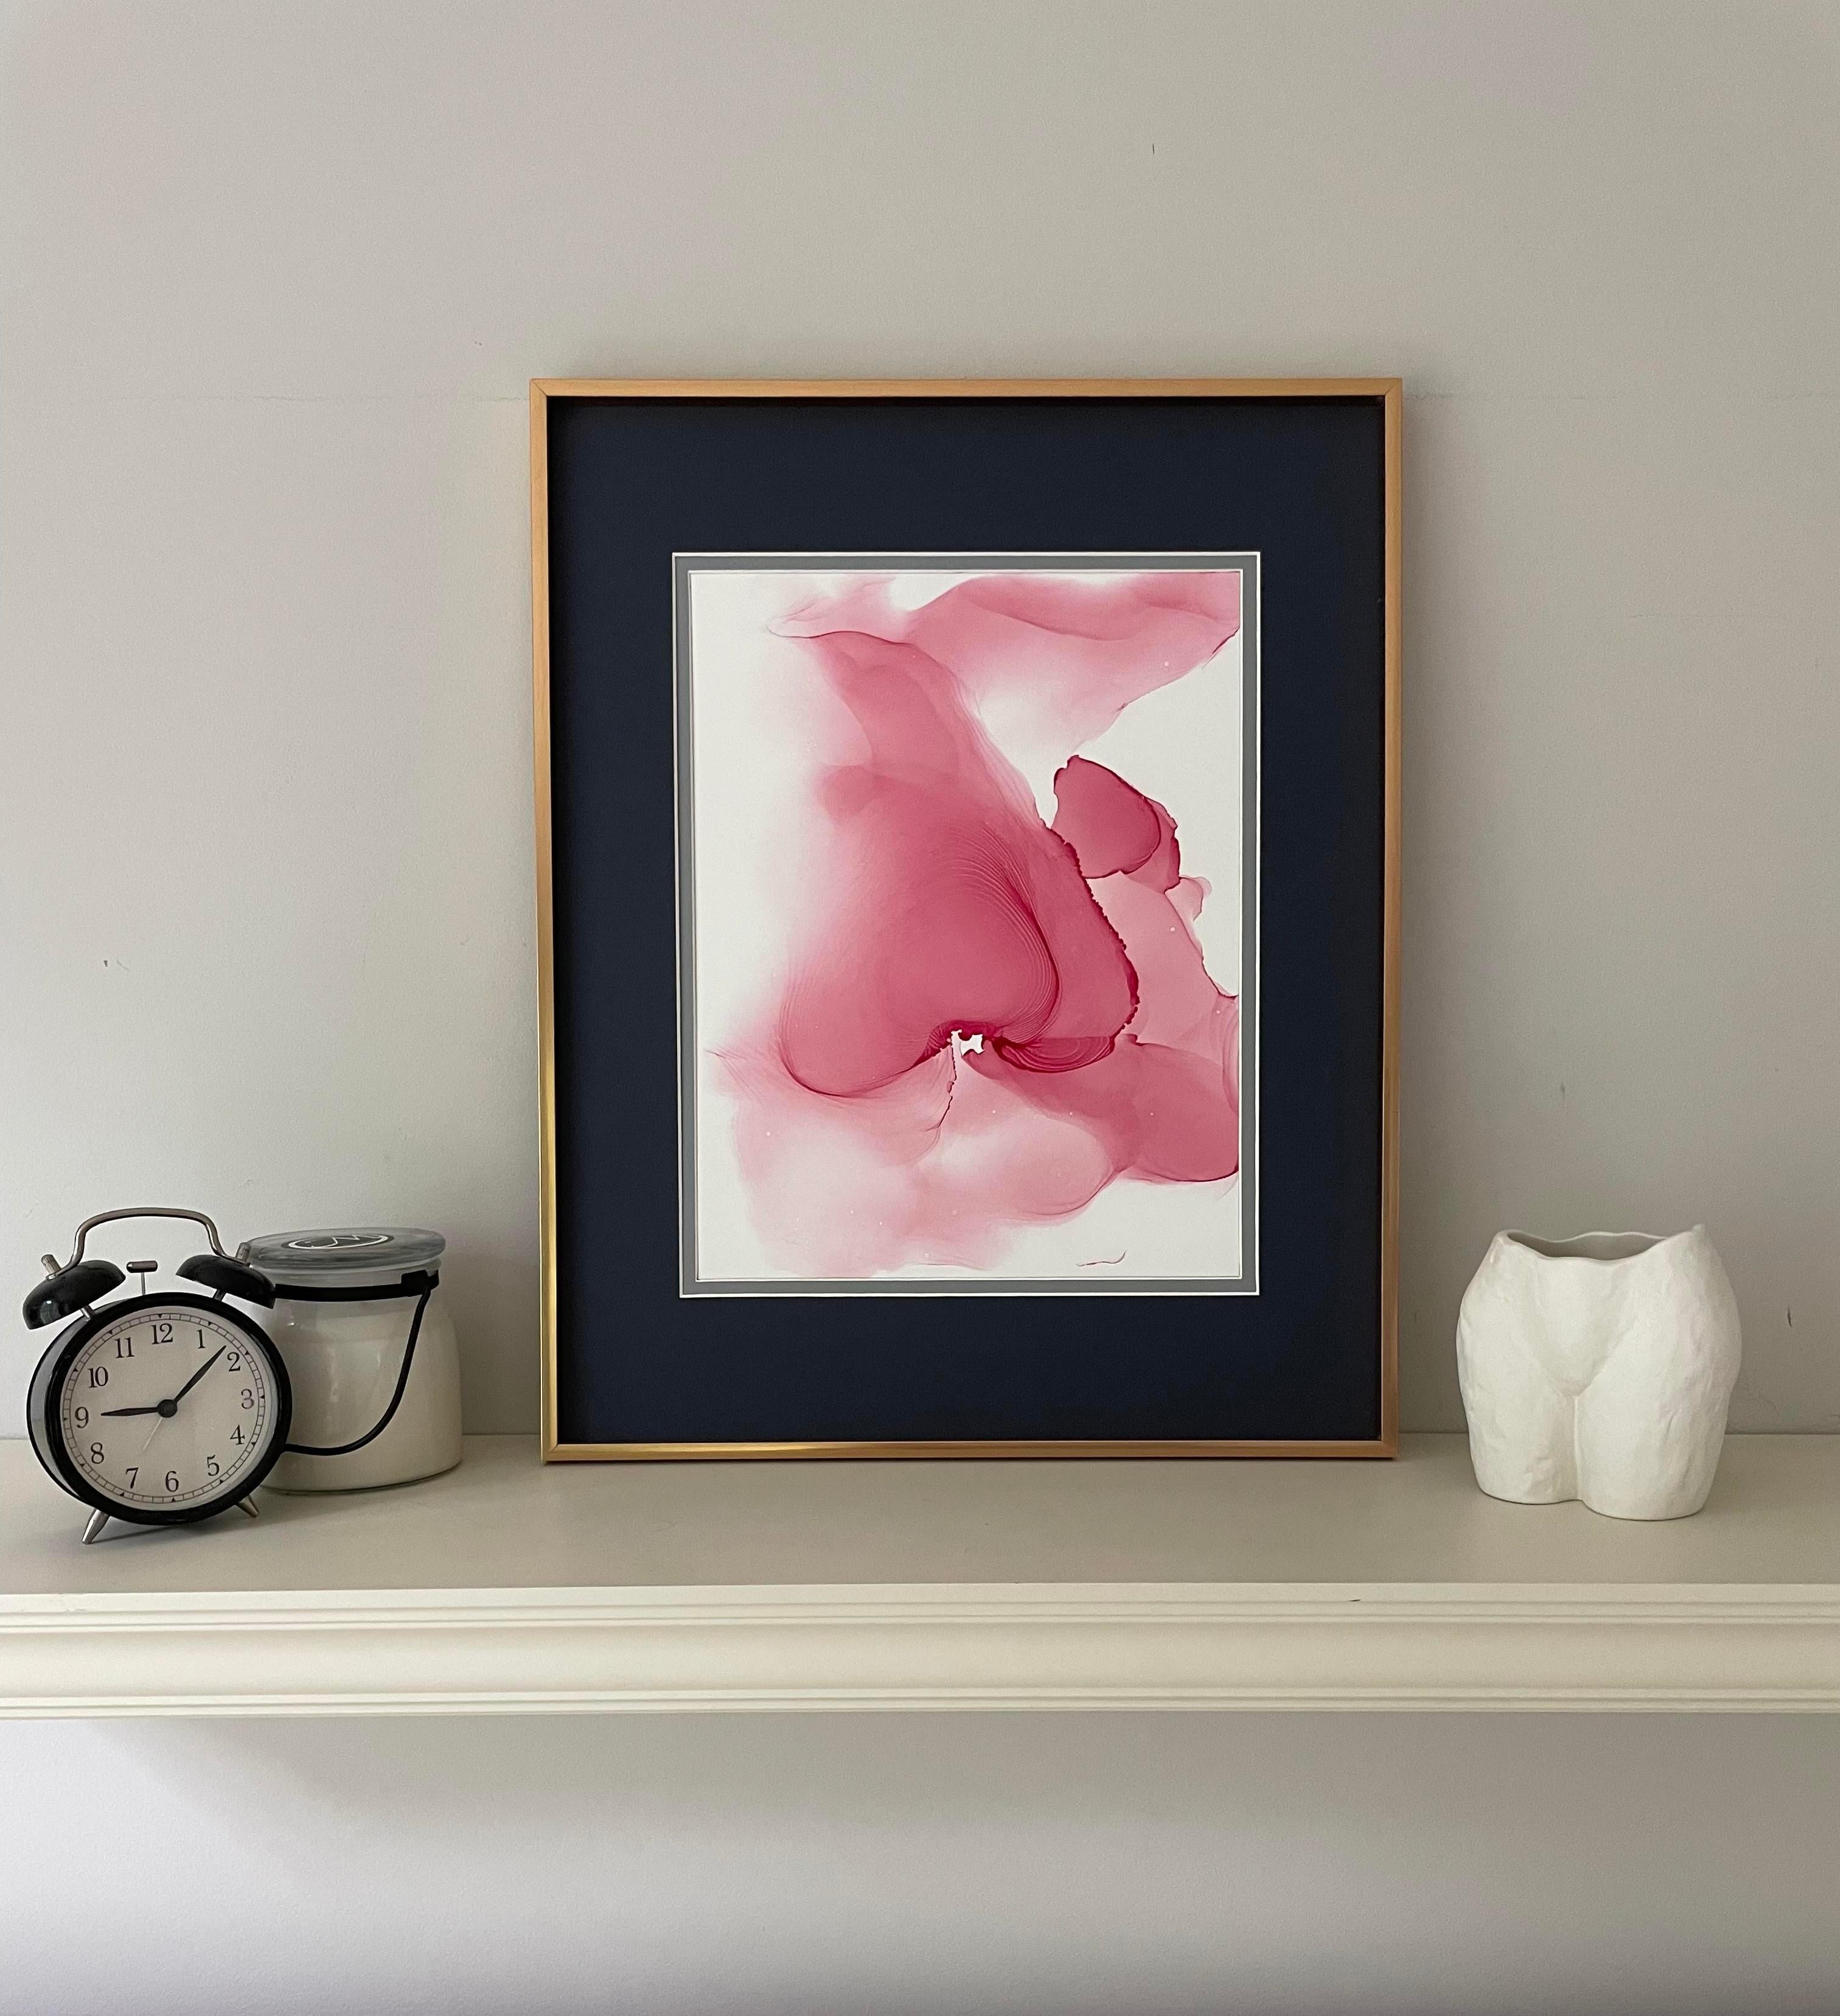 Art inconnu d'abstraction de fleurs, réalisé en rose pâle et de couleur rose - Expressionnisme abstrait Painting par Mila Akopova